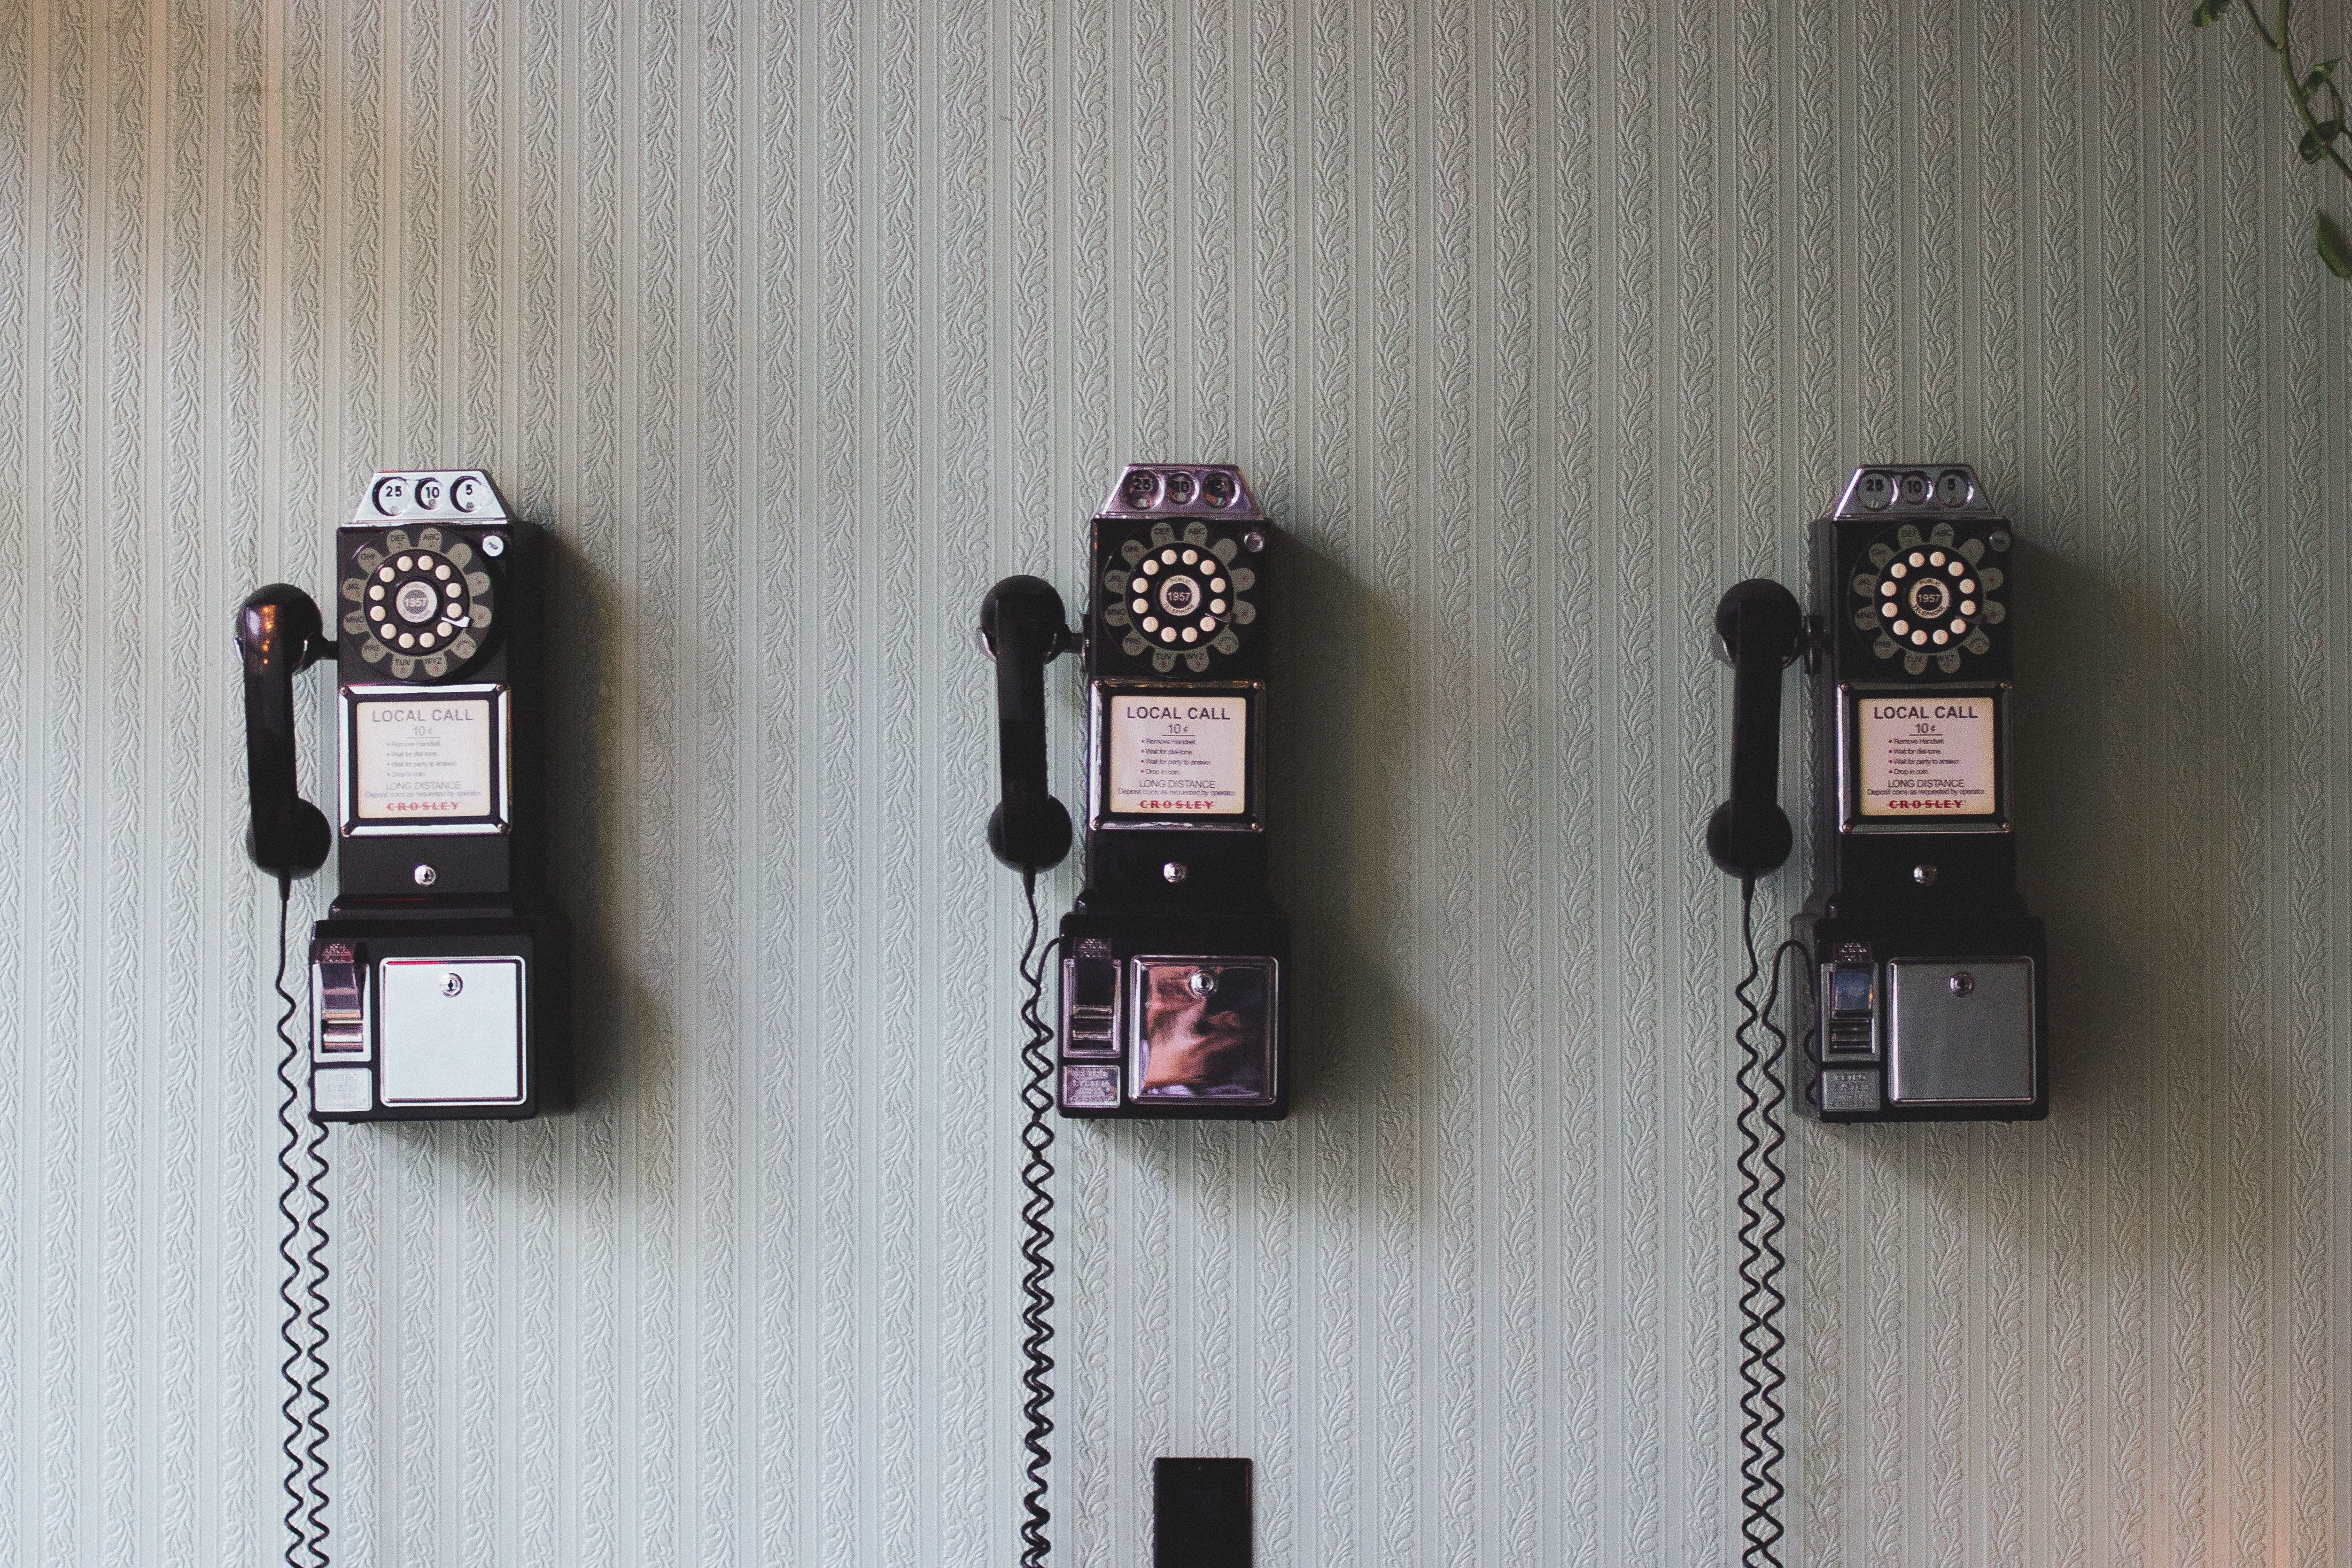 Kontakte und Anmeldungen, Bild von 3 alten Telefonen an der Wand als Sinnbild für Kontakte